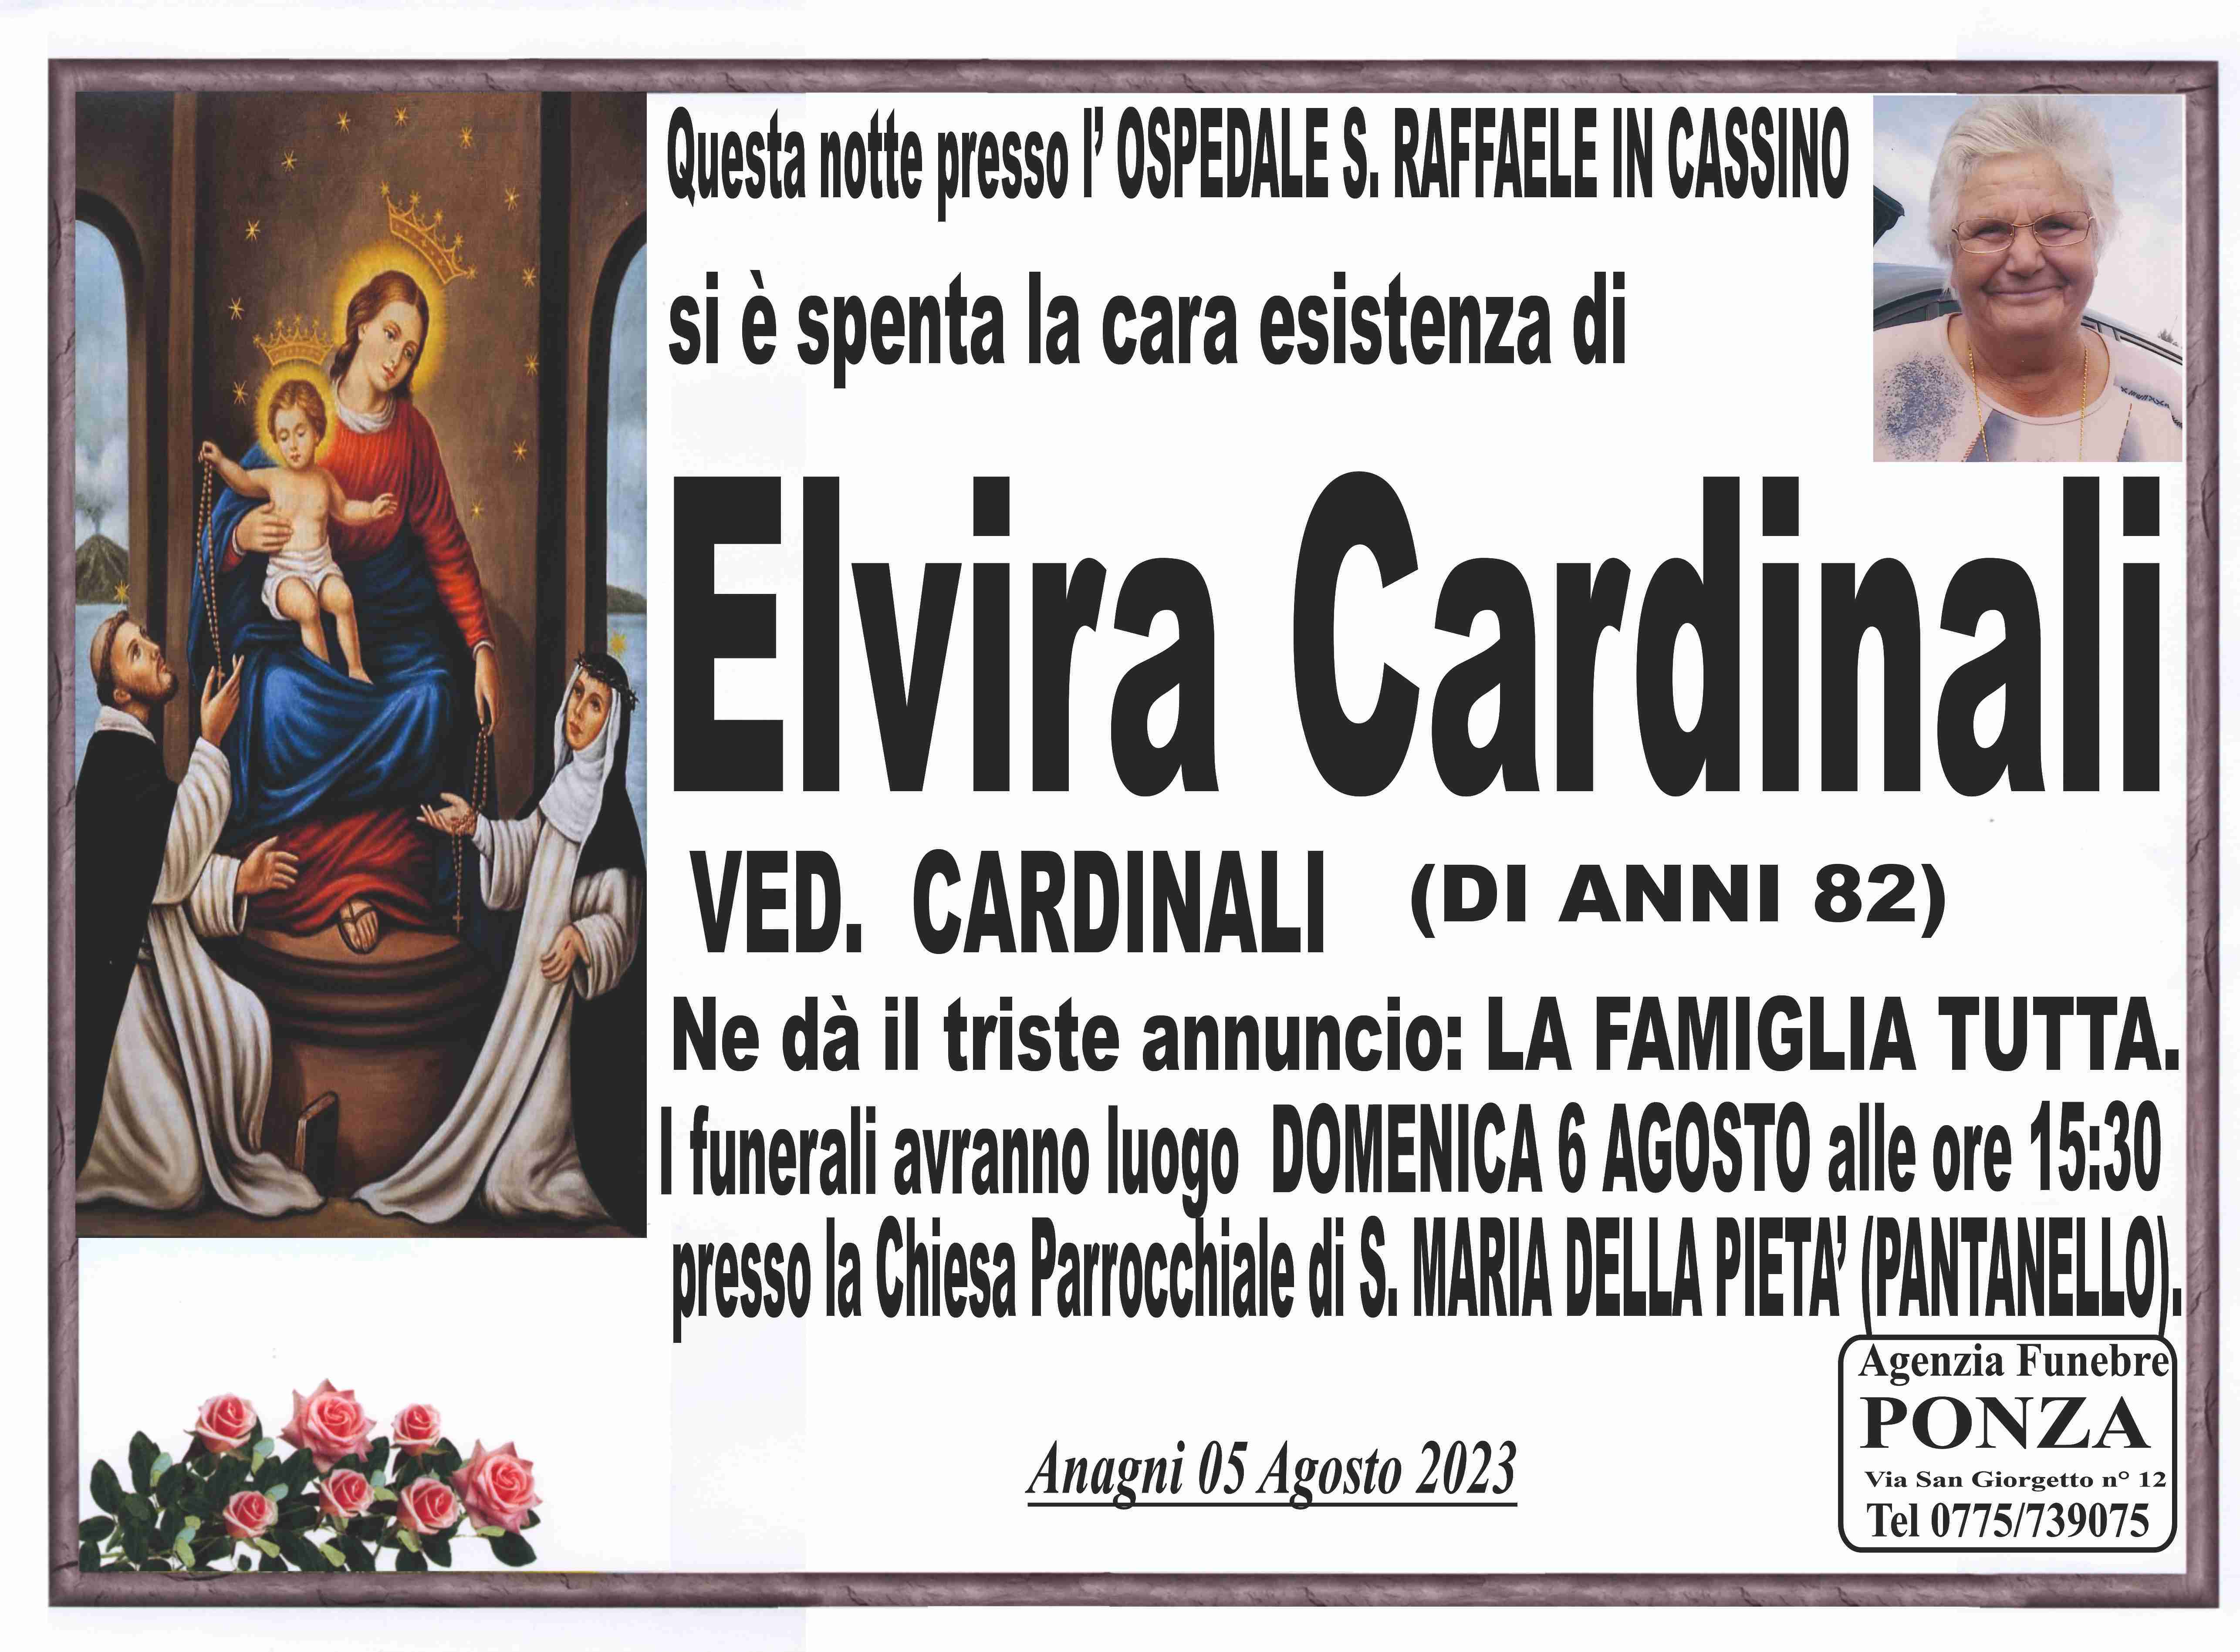 Elvira Cardinali